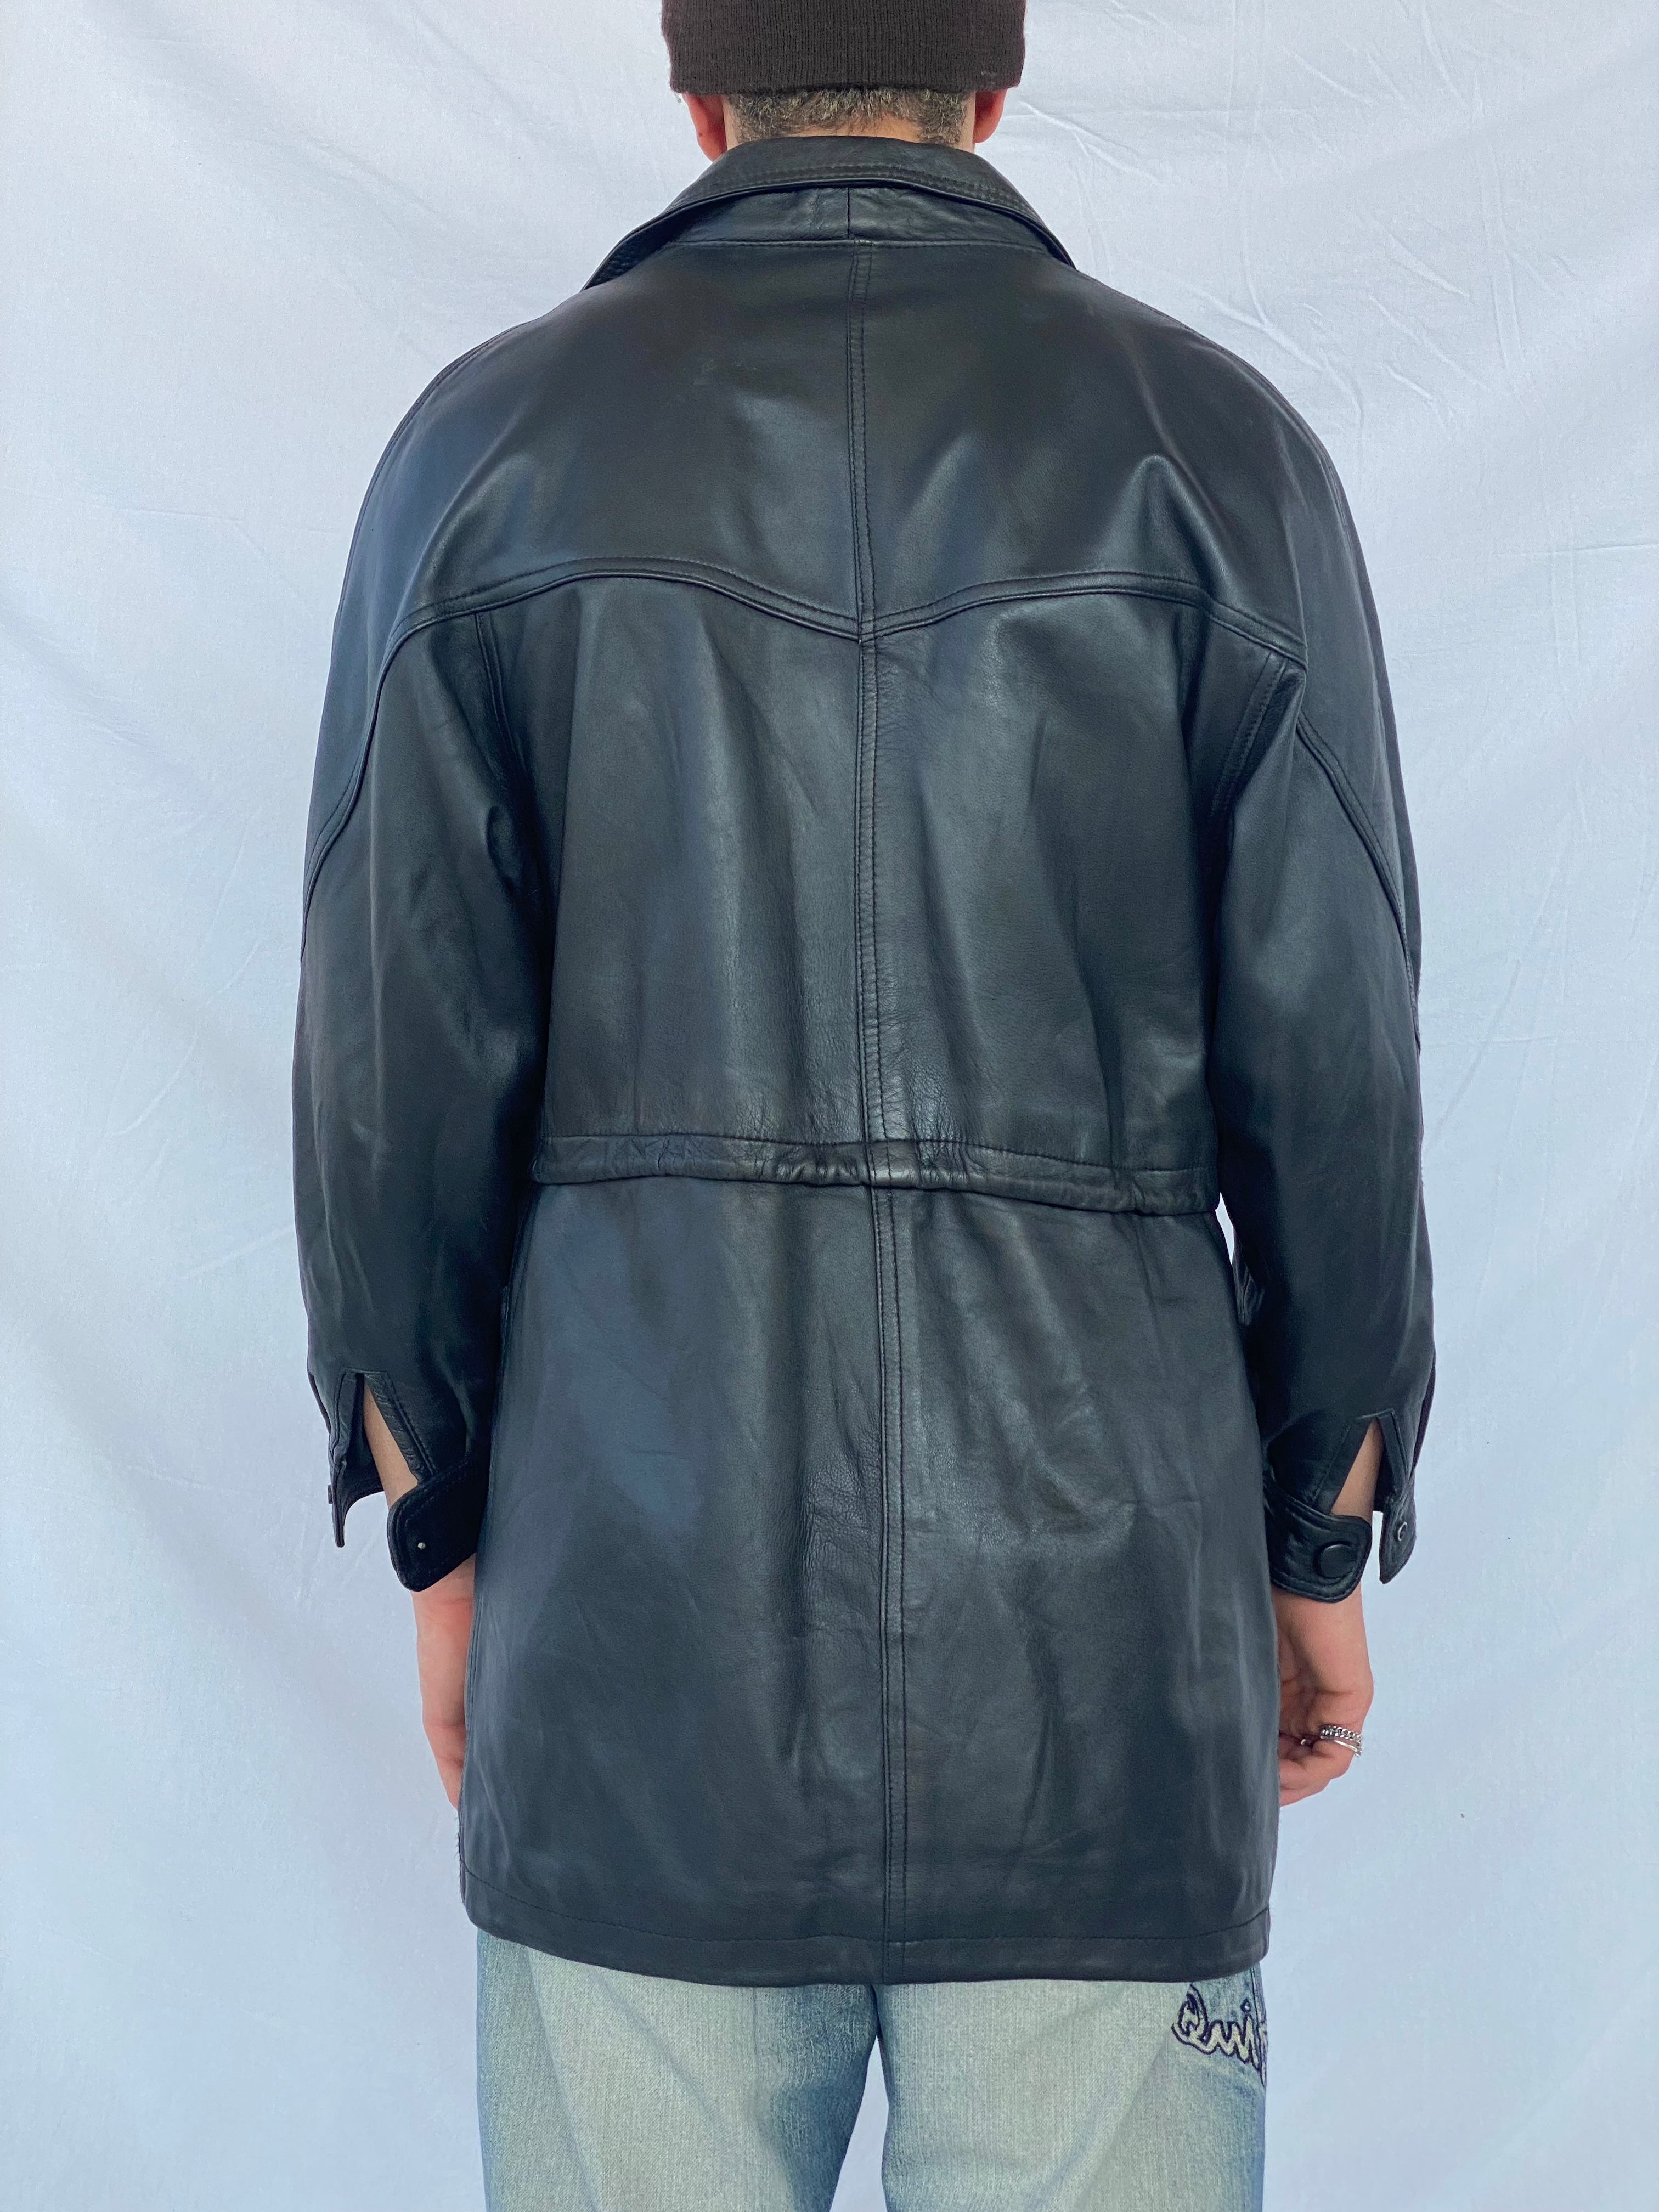 Vintage Genuine Leather Coat - Balagan Vintage Leather Coat black leather, coat, genuine leather, genuine leather coat, leather coat